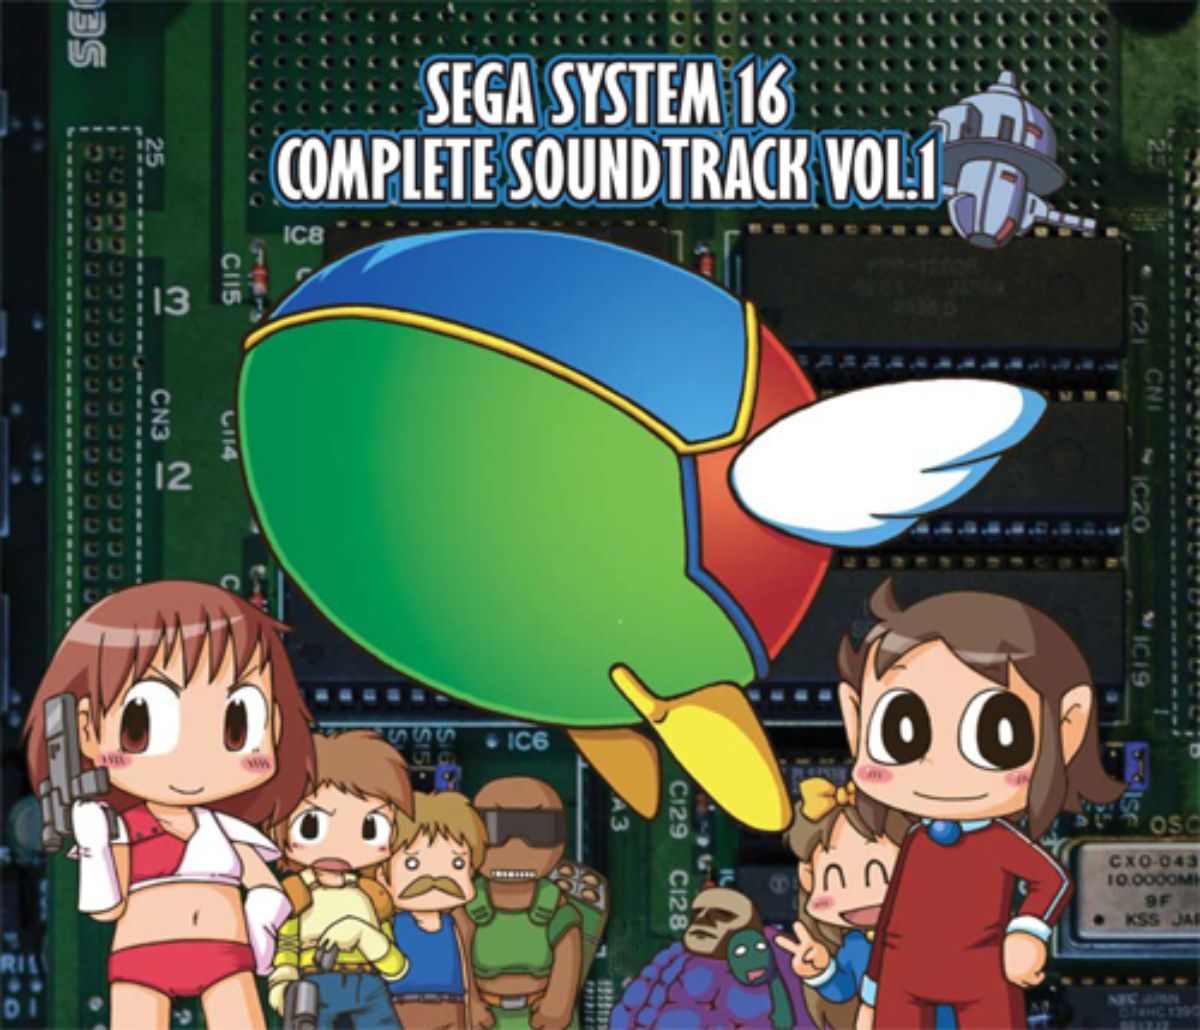 Sega System 16 Complete Soundtrack Vol.1